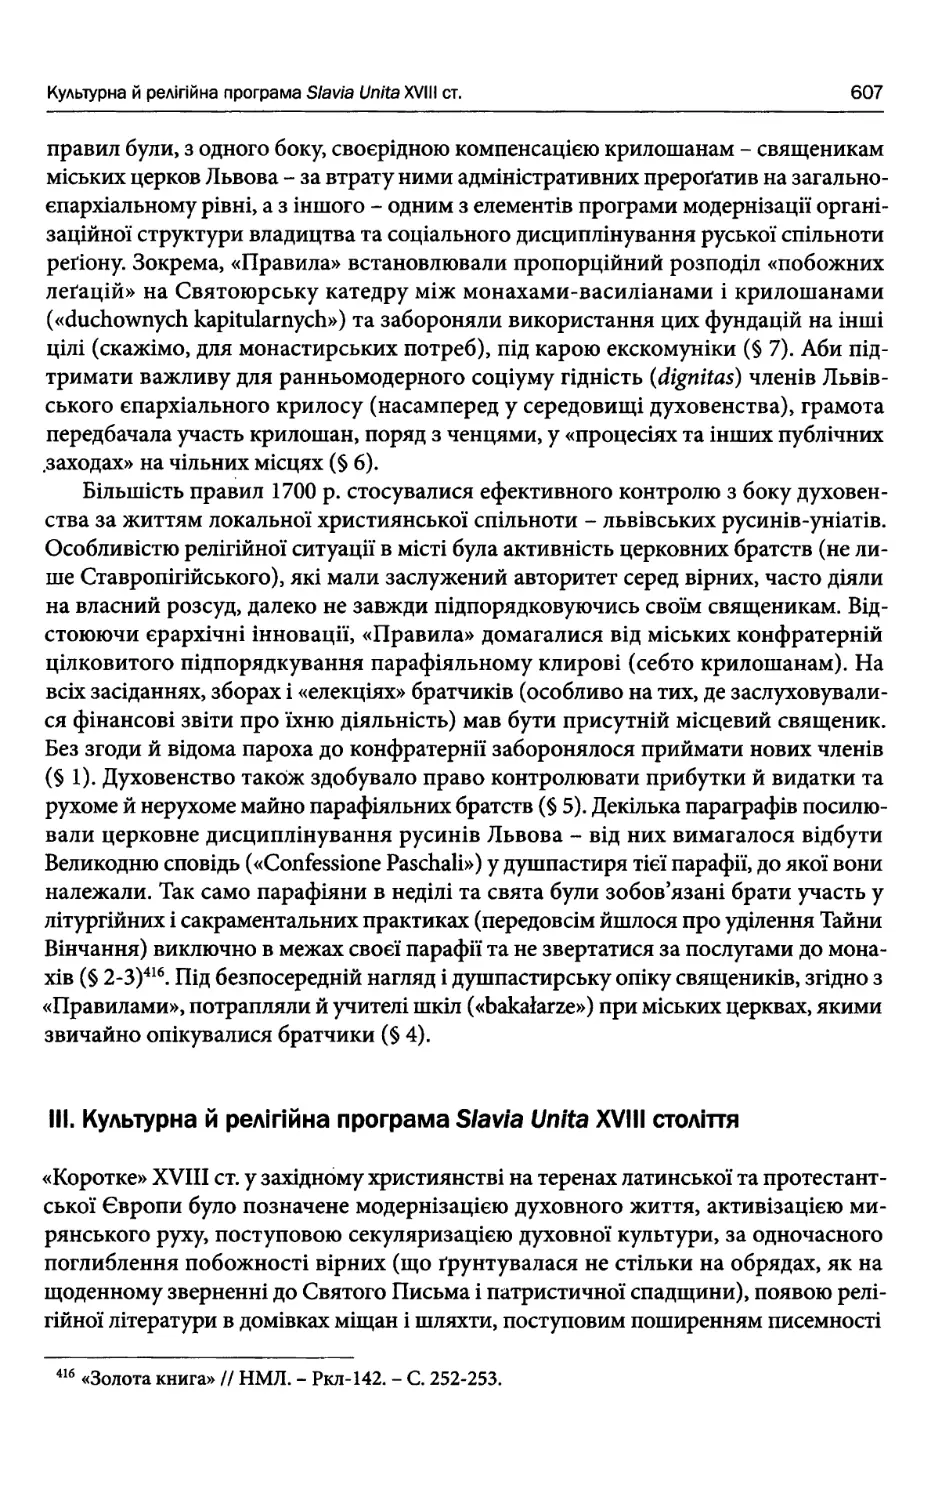 III. Культурна й релігійна програма Slavia Unita XVIII століття